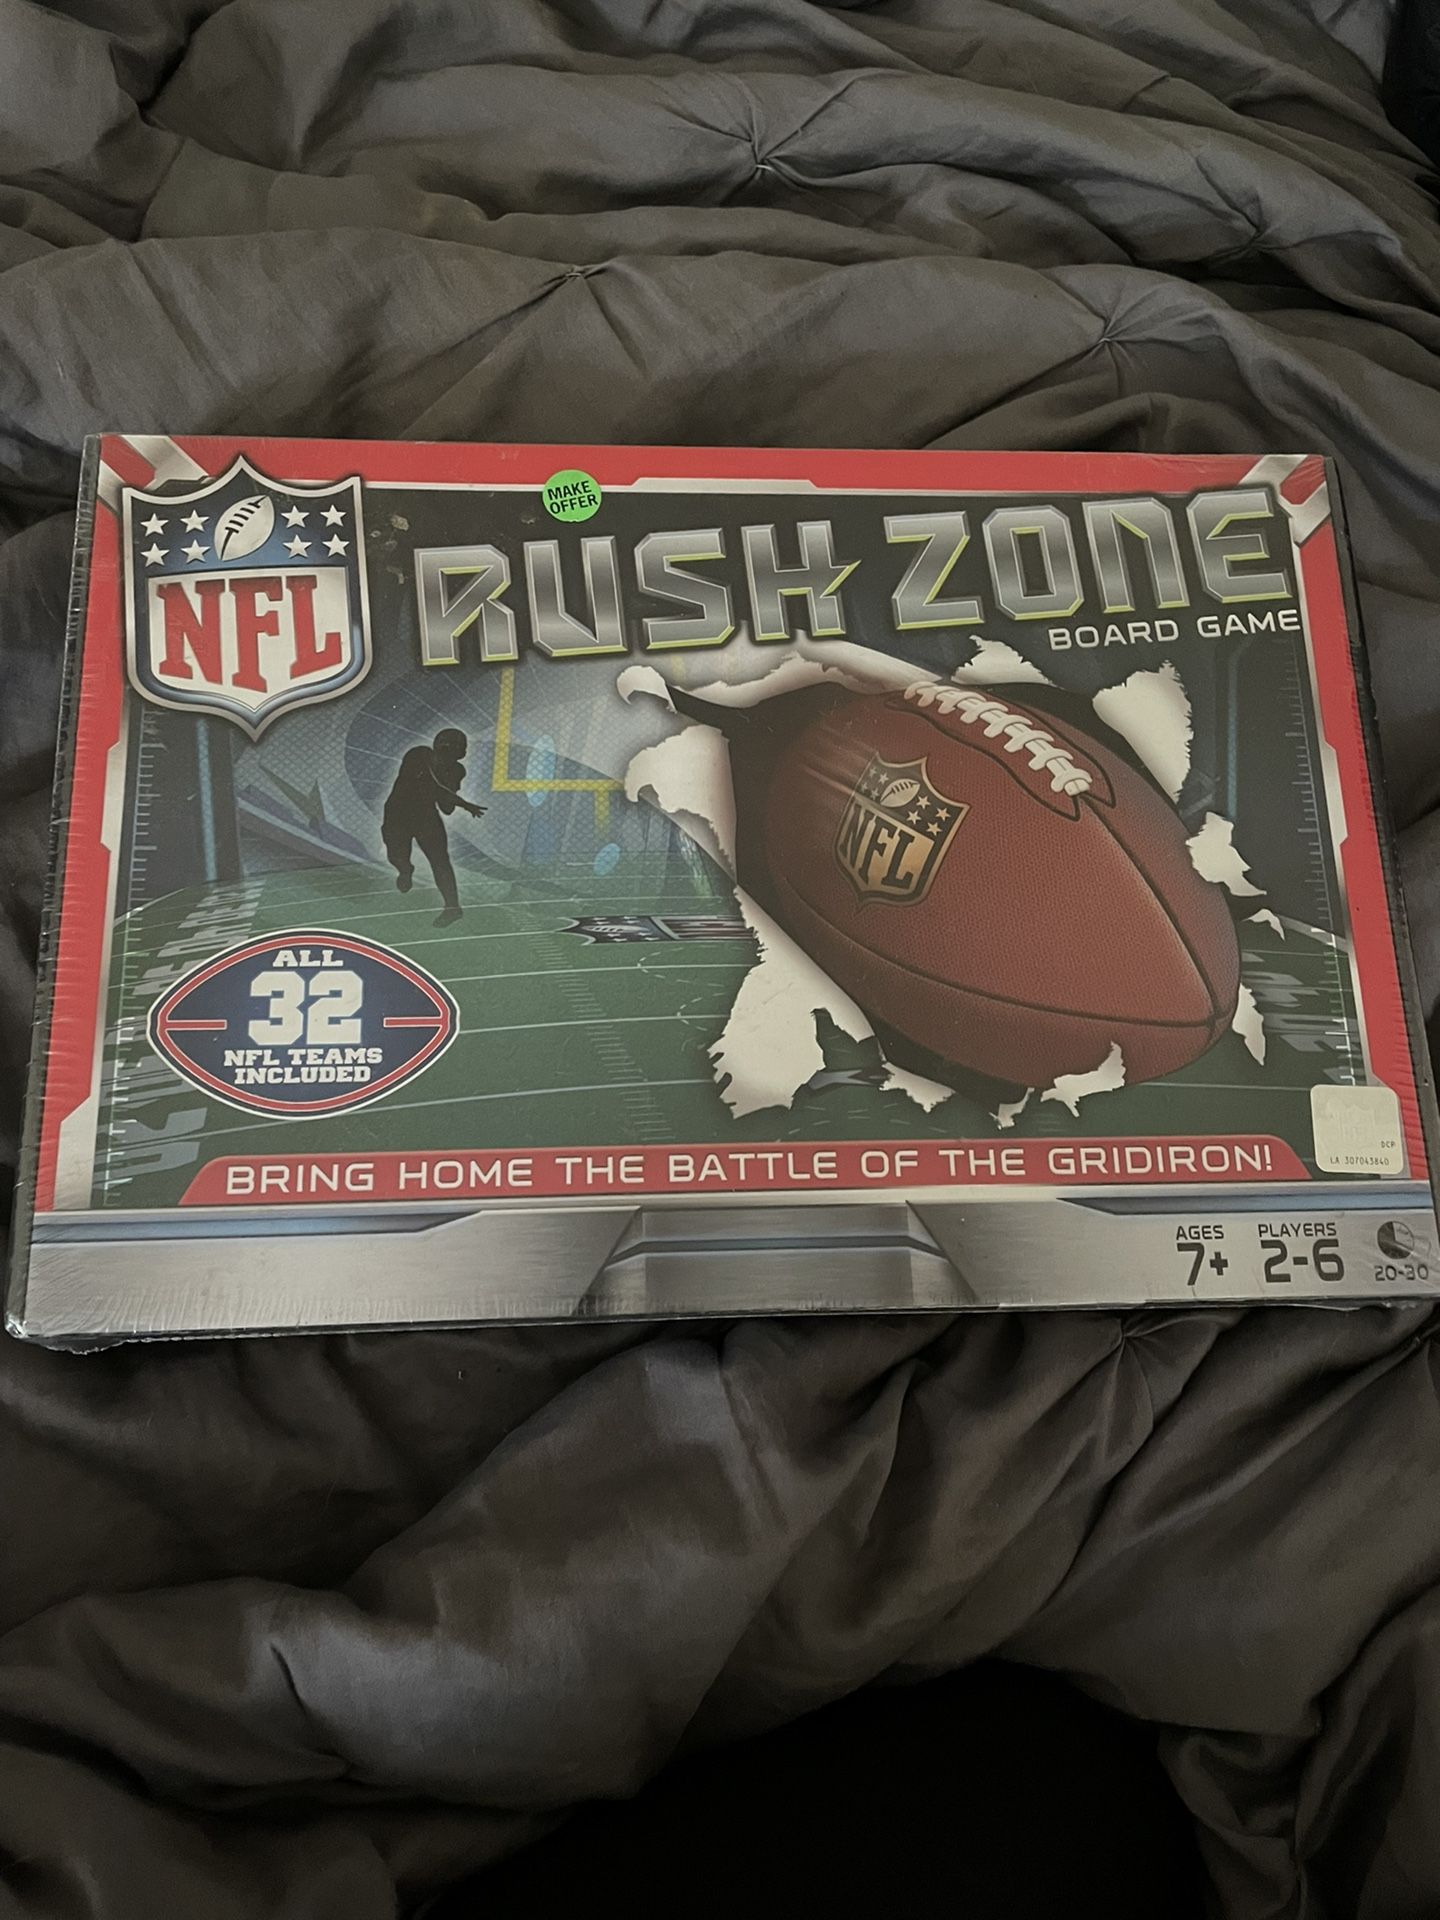 Rushzone Board game 